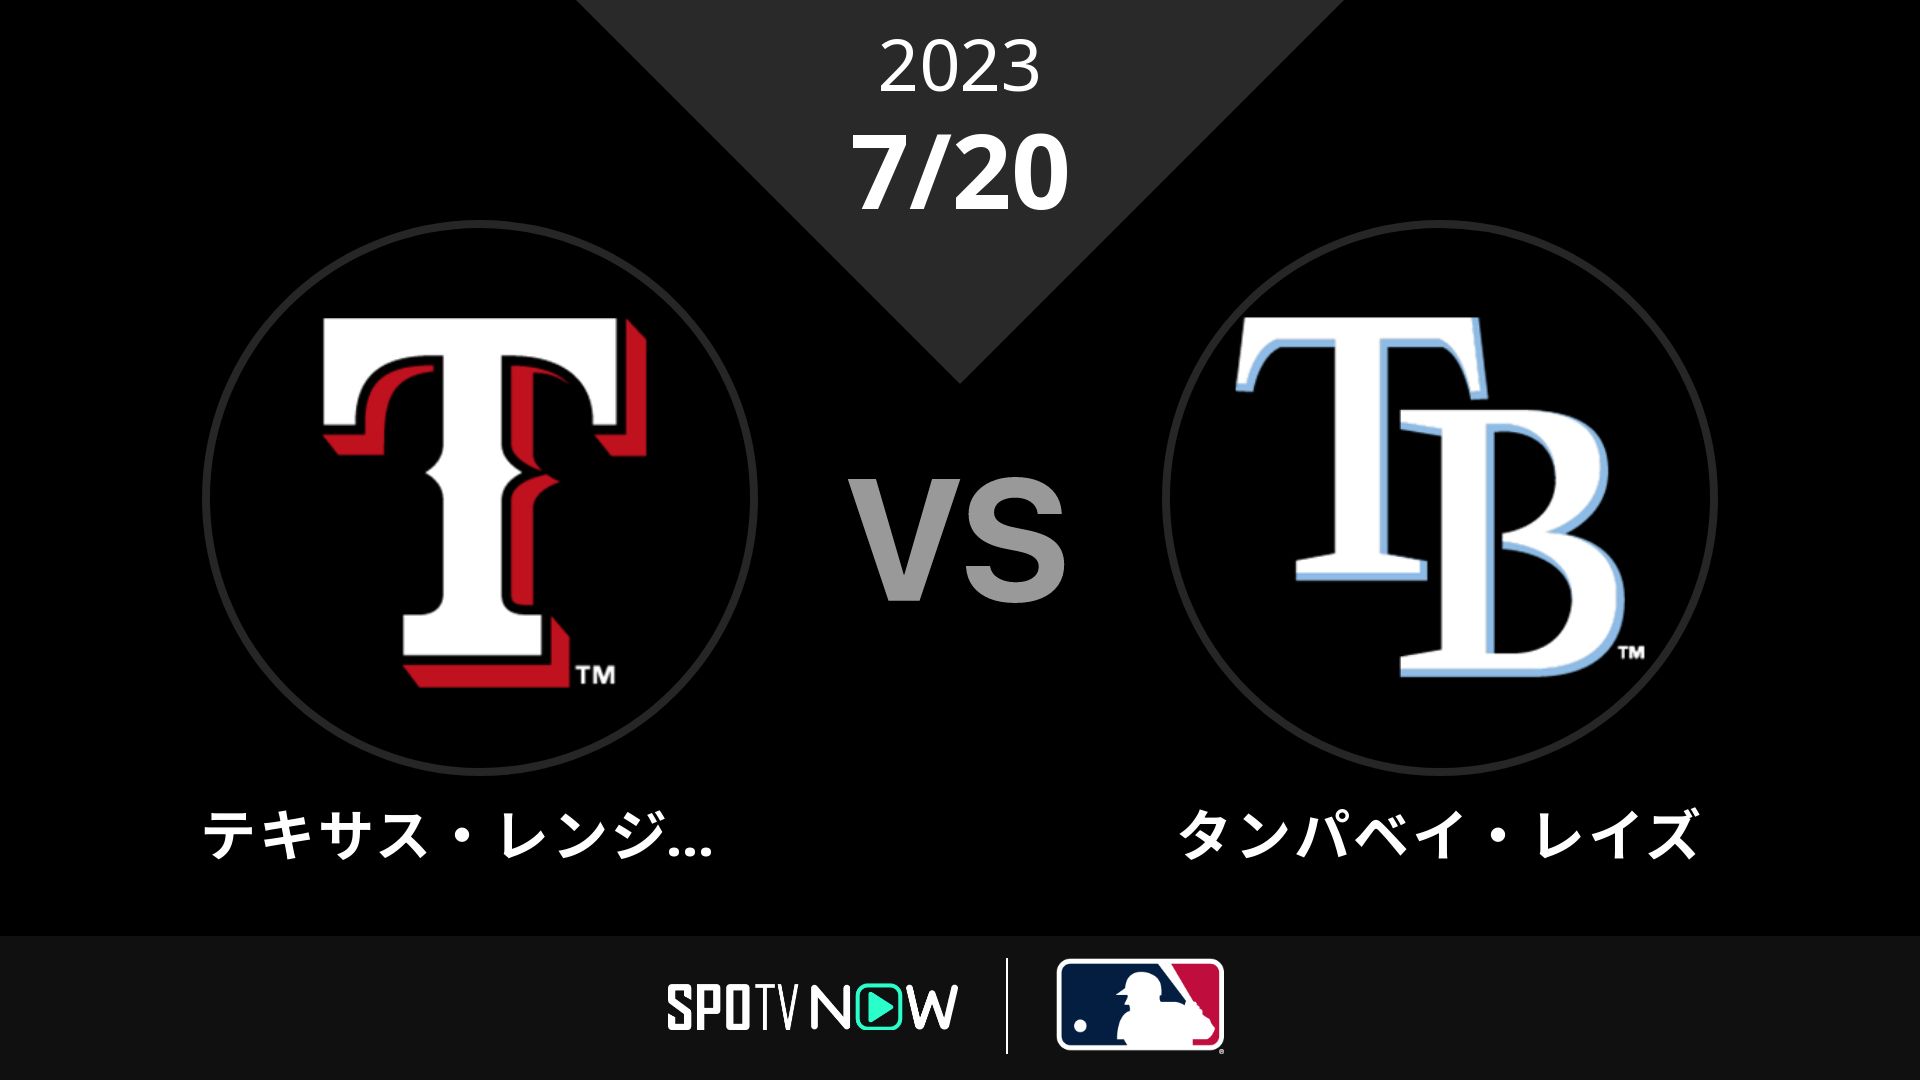 2023/7/20 レンジャーズ vs レイズ [MLB]